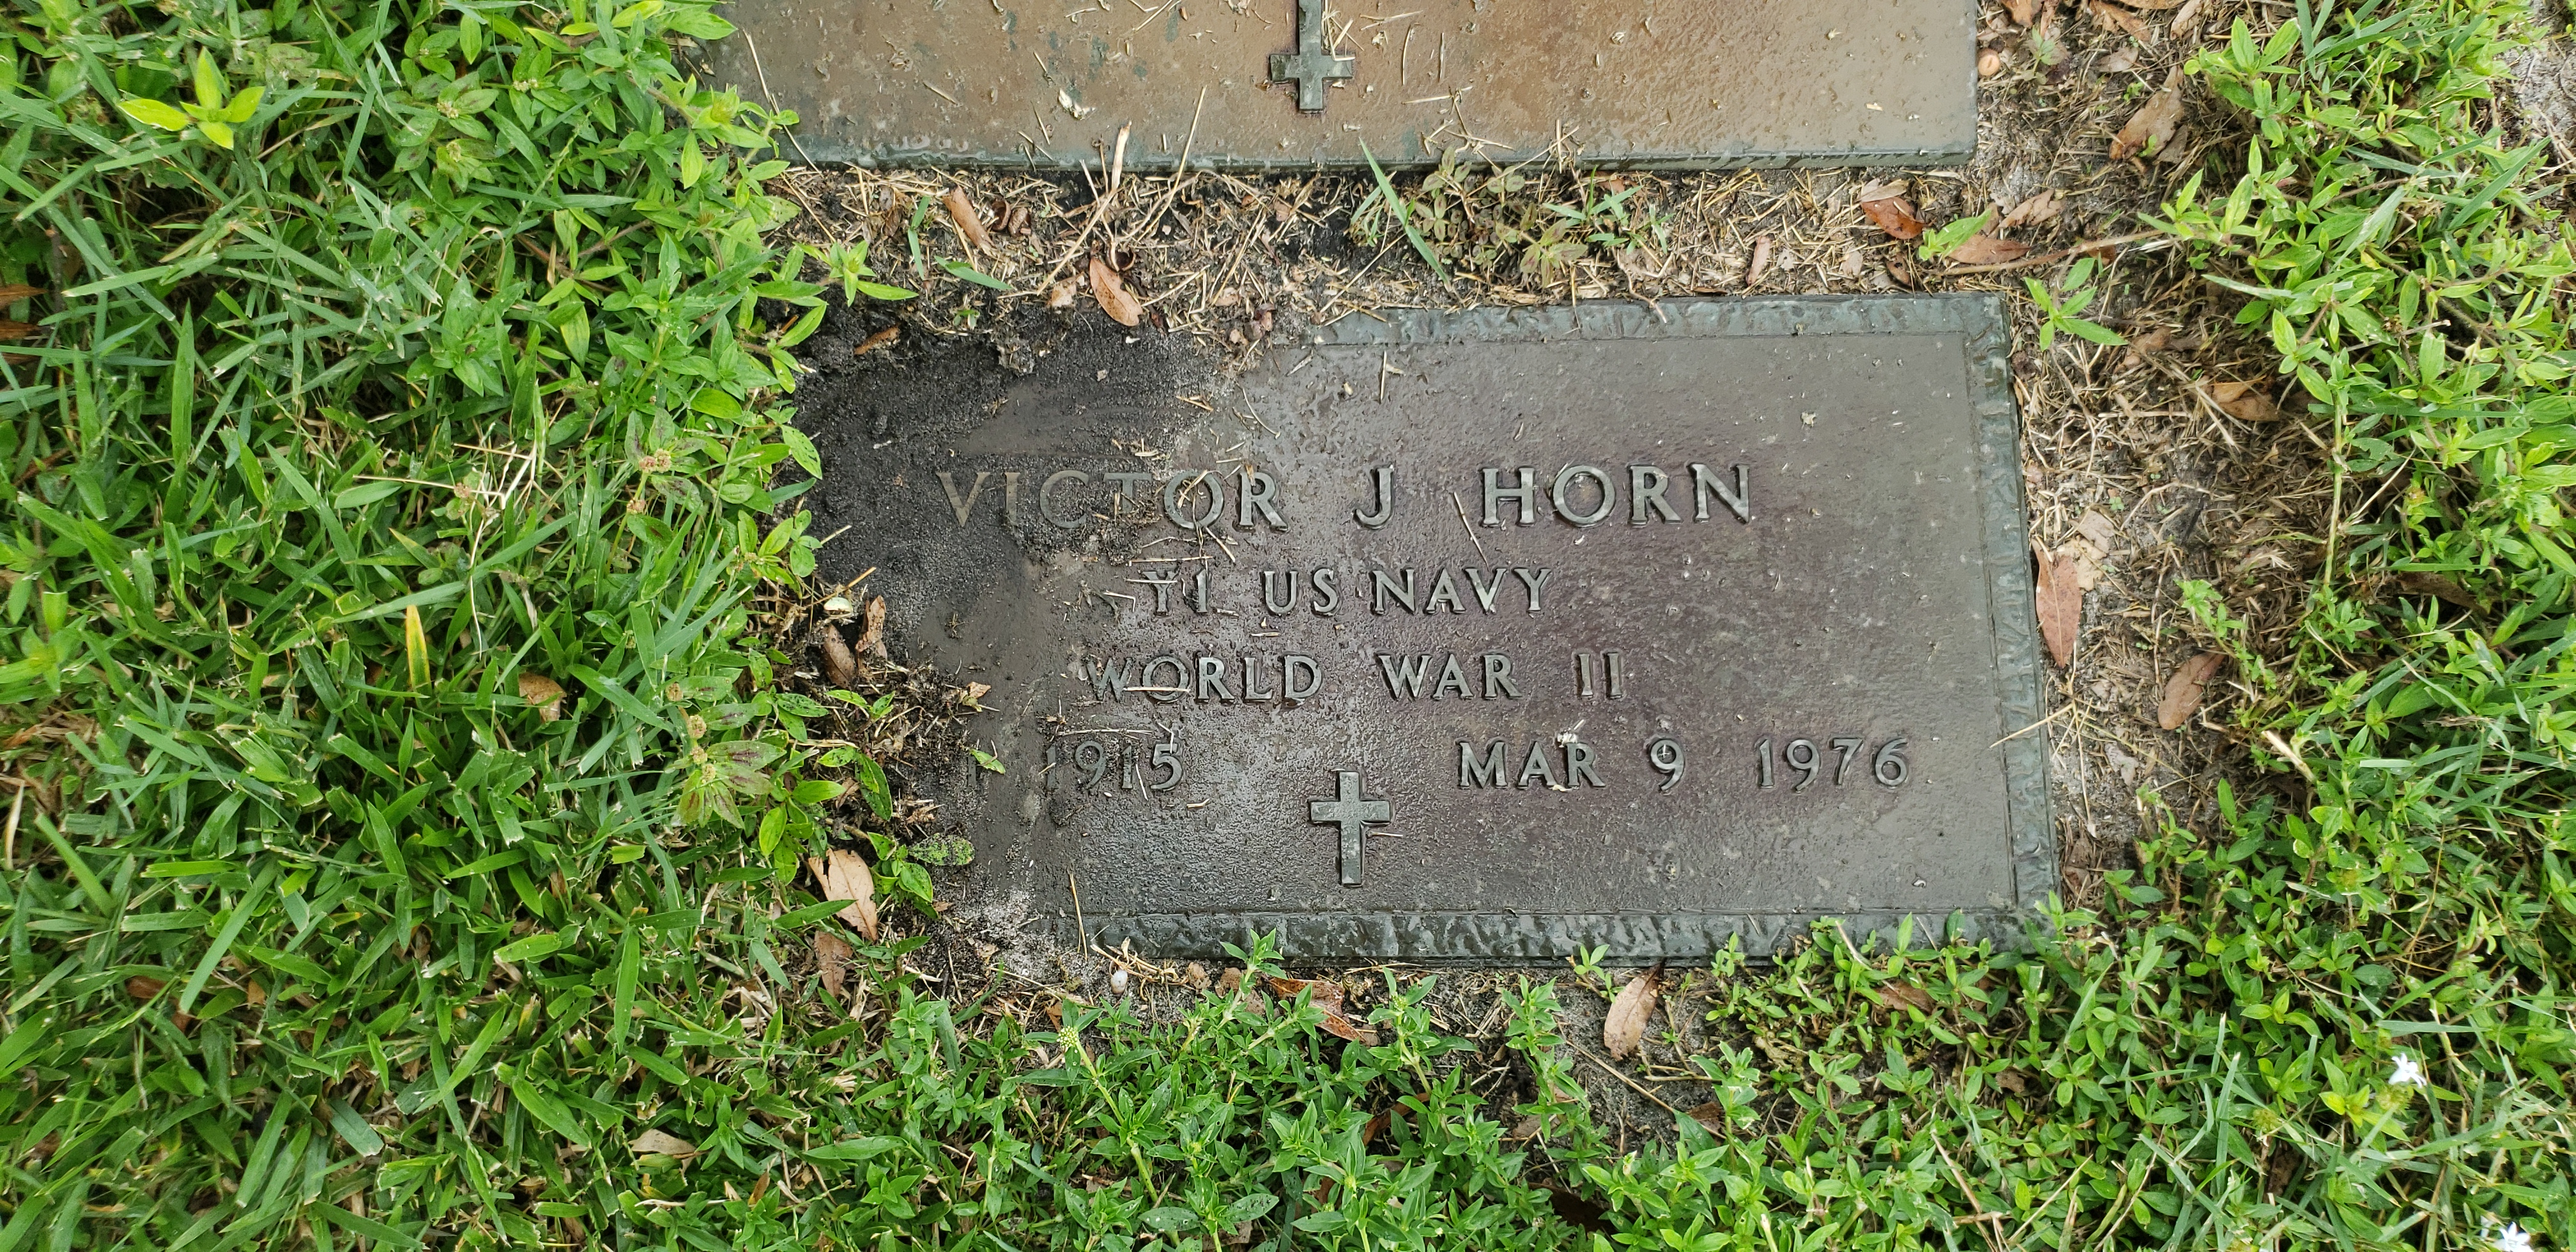 Victor J Horn